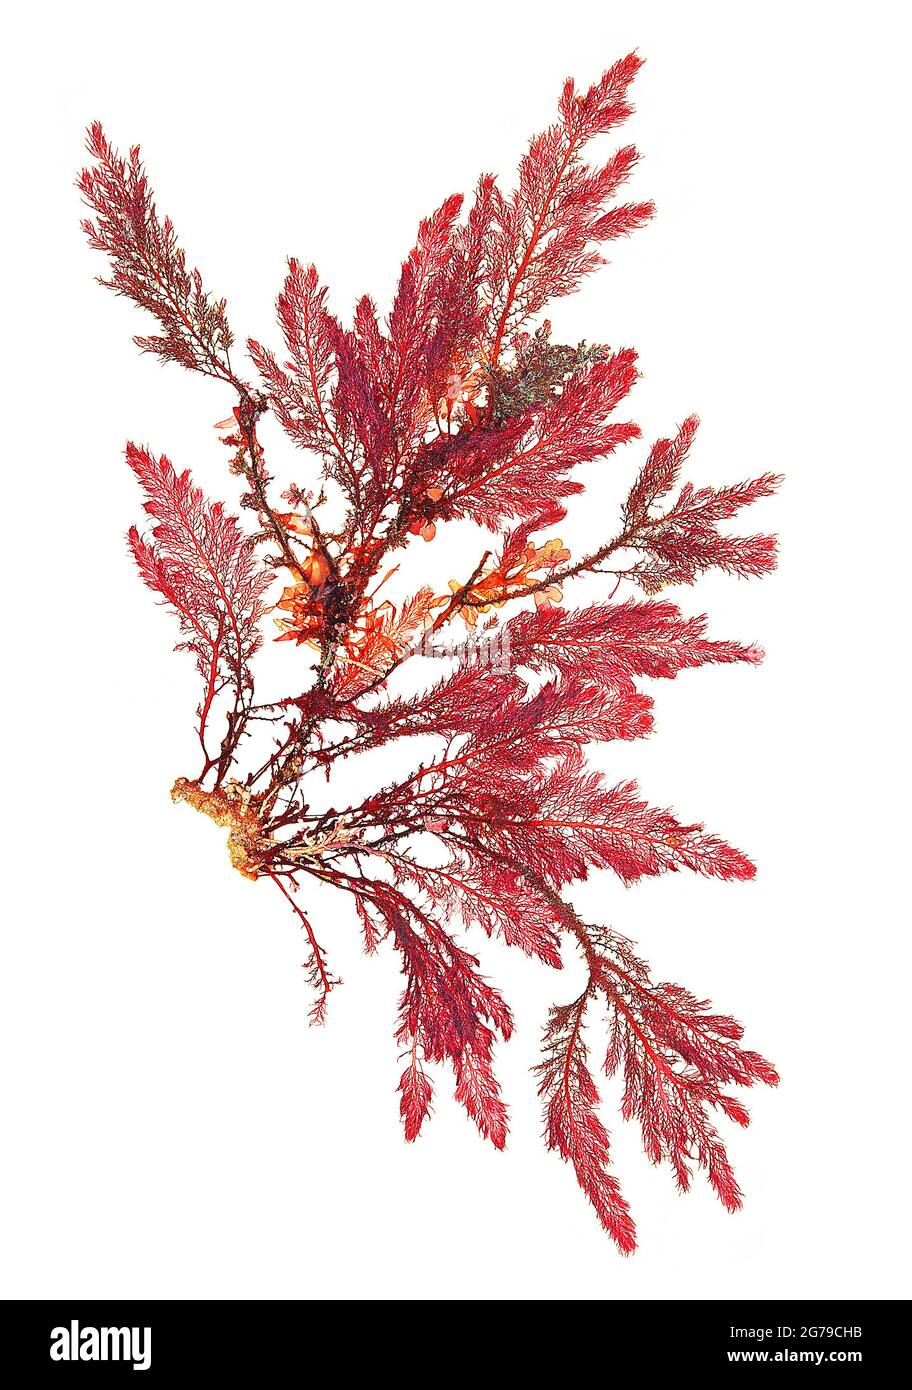 Heterosiphonia plumosa (J. Ellis) Batters, red alga (Florideophyceae) Stock Photo